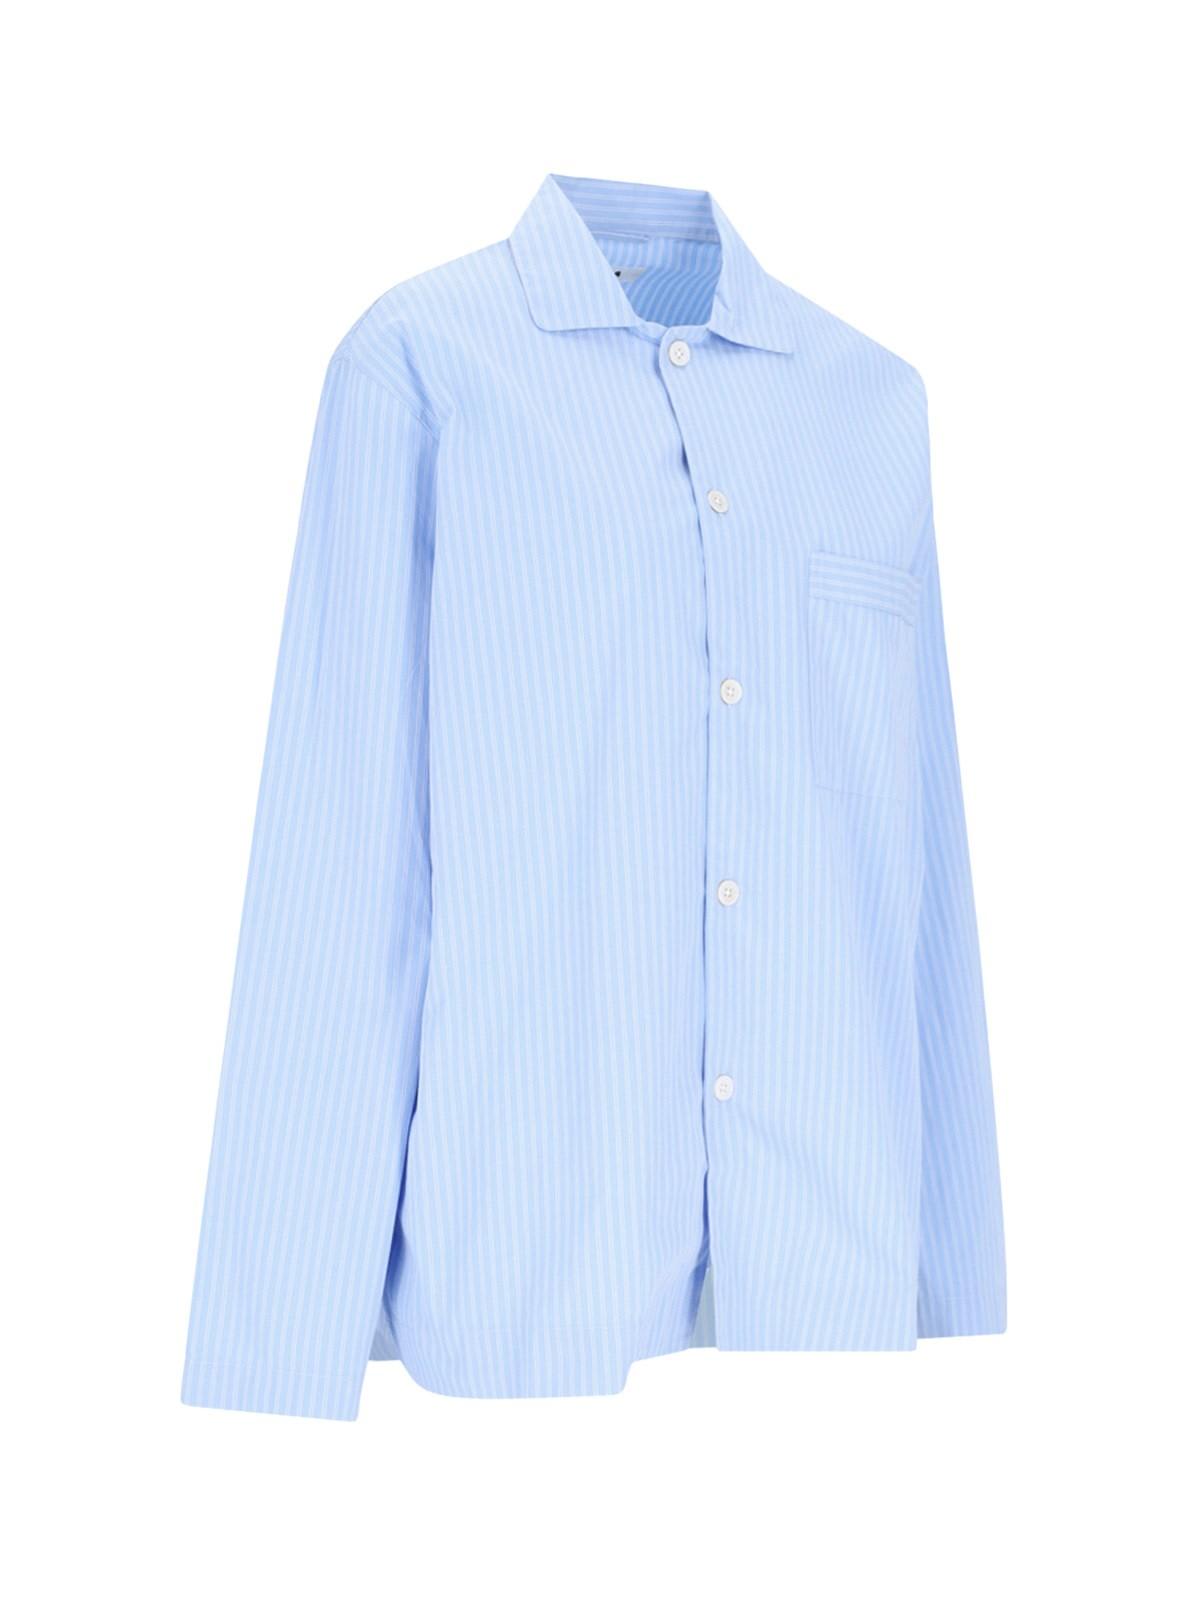 Shop Tekla Pin Stripes Shirt In Blue/white